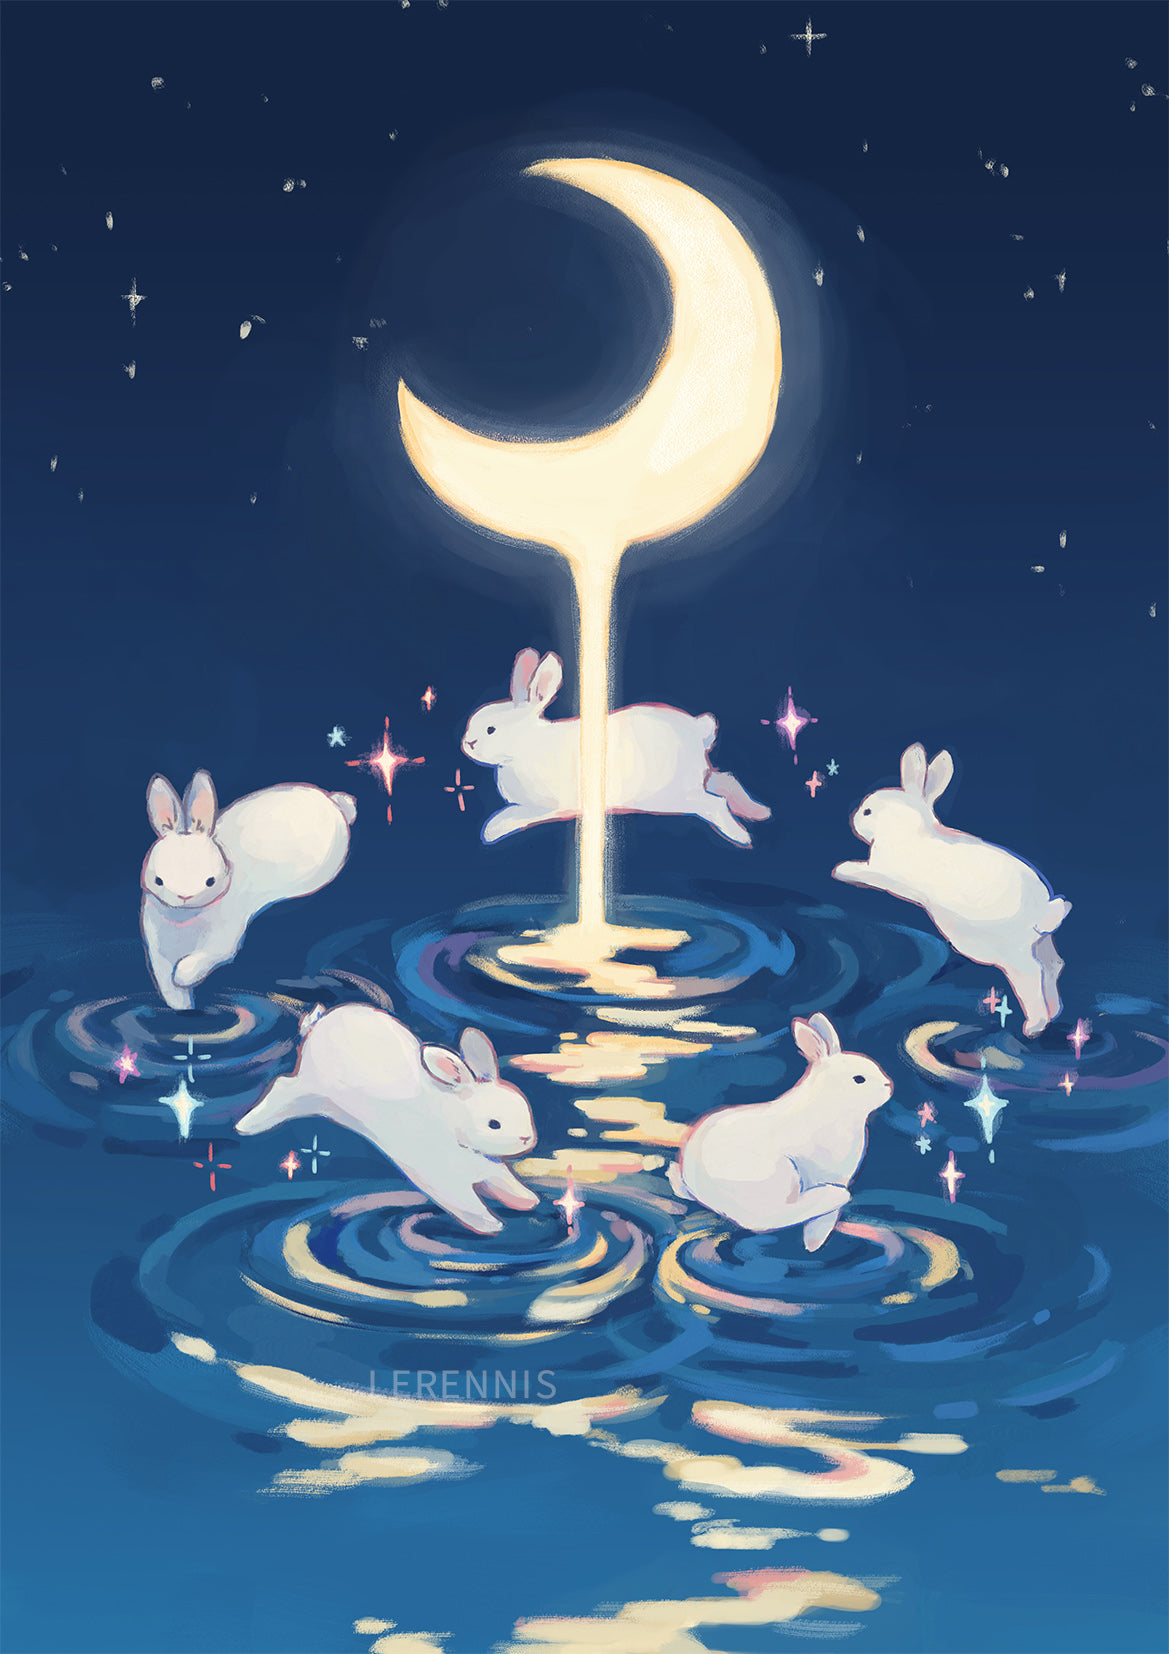 Moon Bunnies Art Print